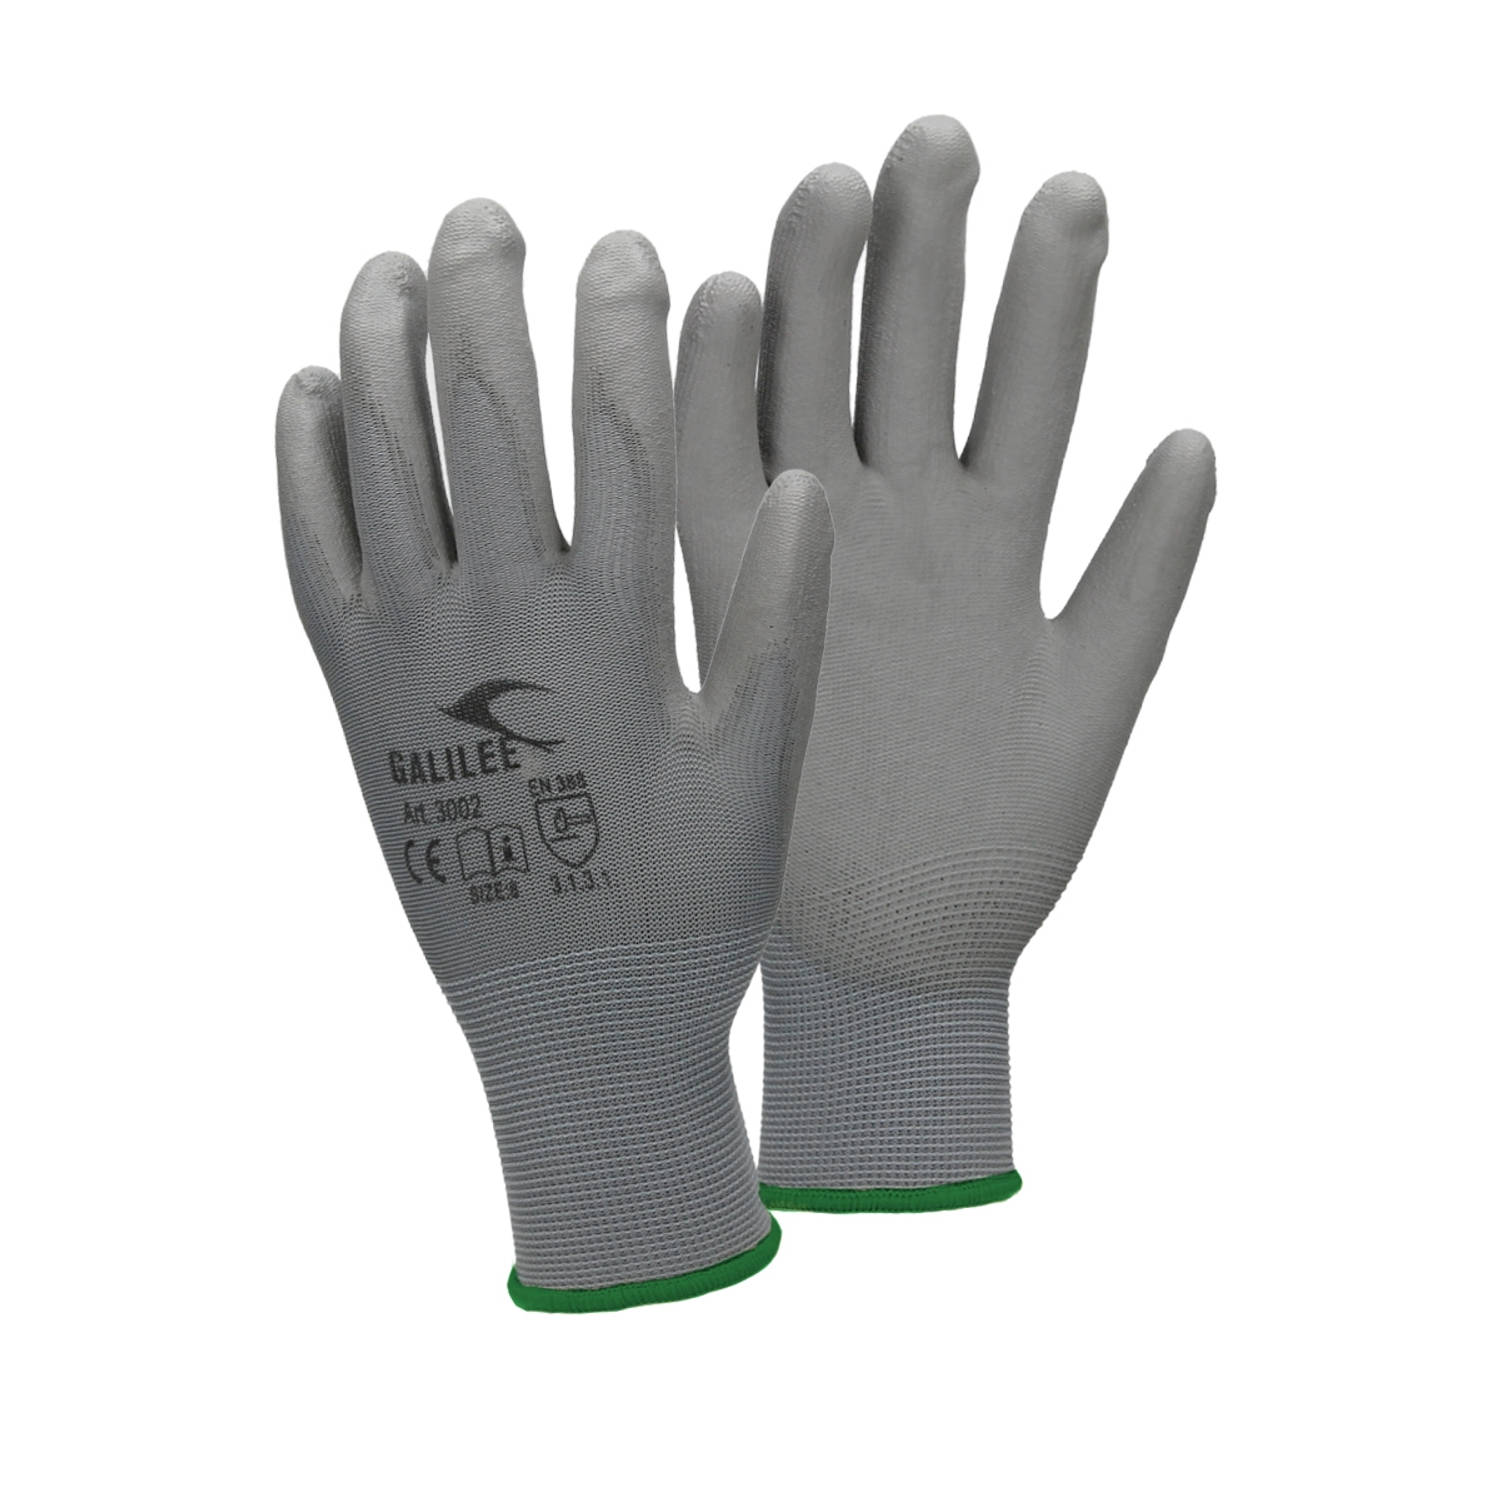 ECD Germany 4 paar werkhandschoenen met PU coating - maat 11-XXL - grijs - monteurshandschoenen montagehandschoenen beschermende handschoenen tuinhandschoenen - diverse kleuren & m